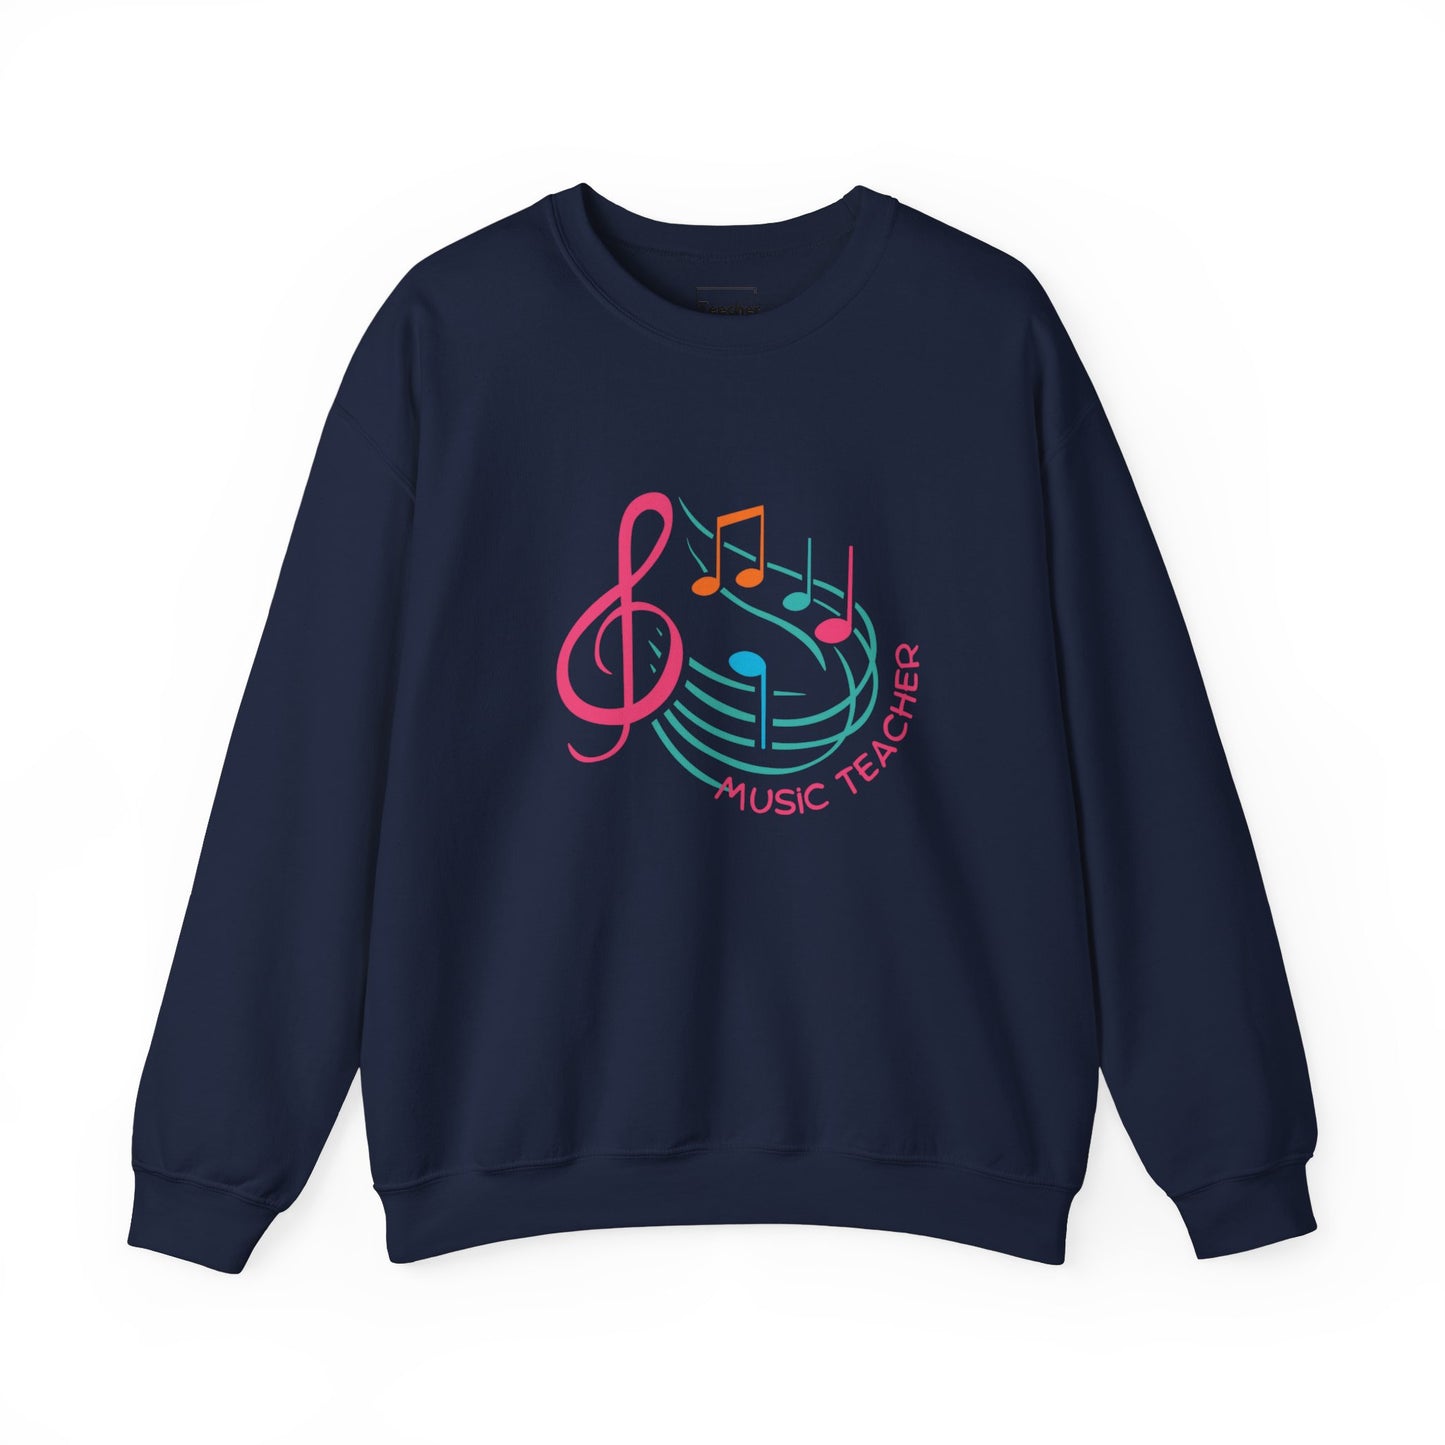 Music Teacher Sweatshirt